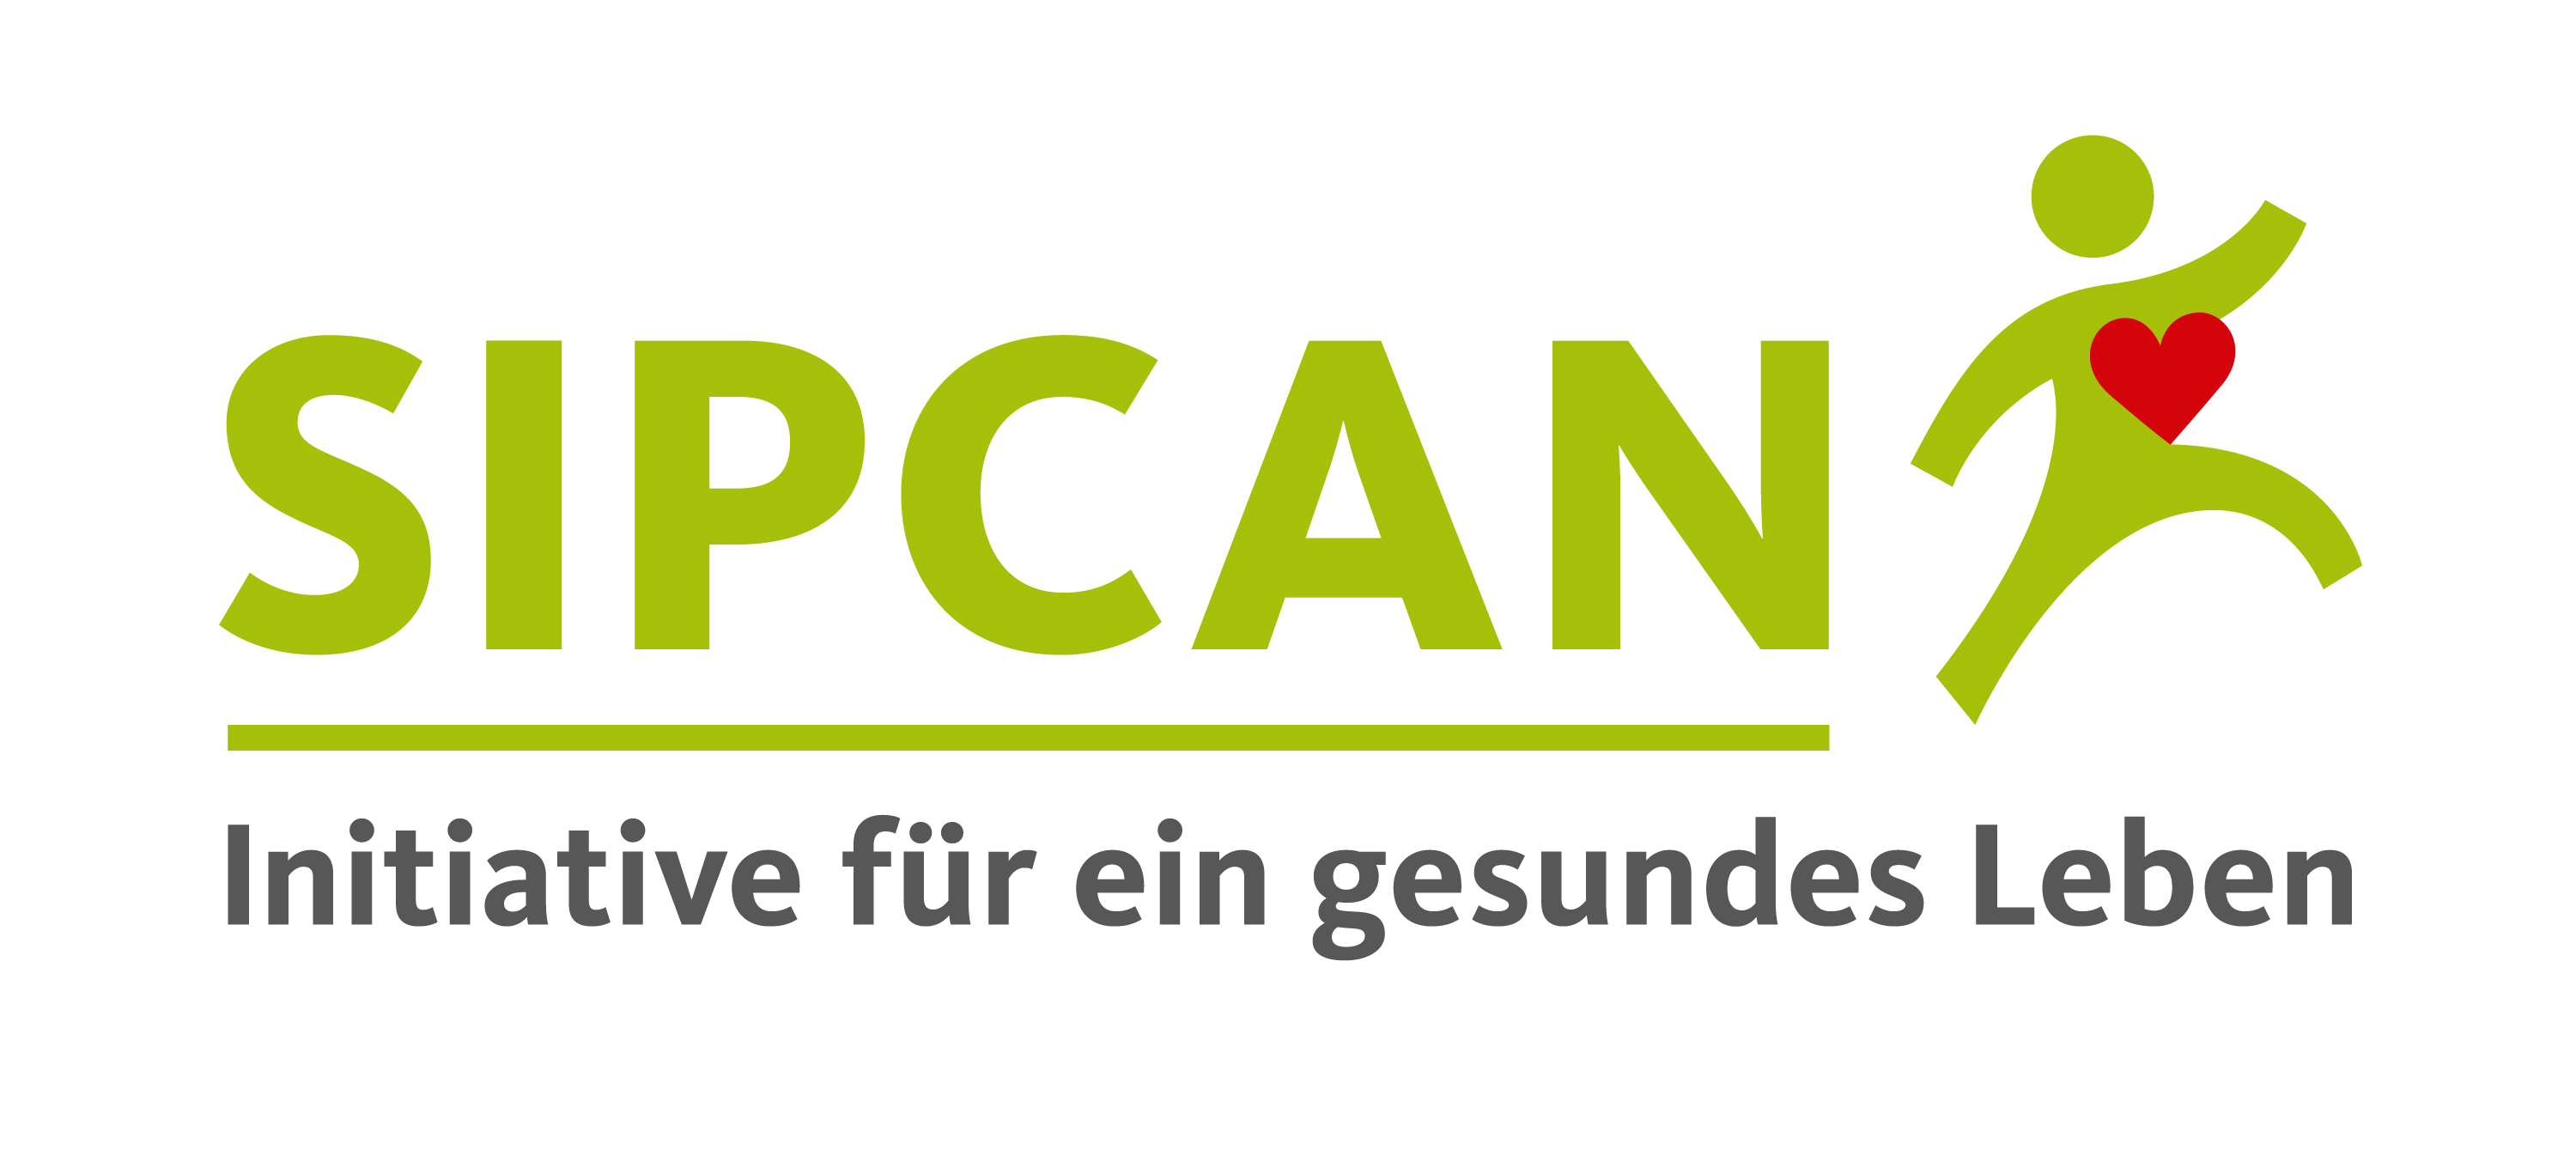 SIPCAN Logo